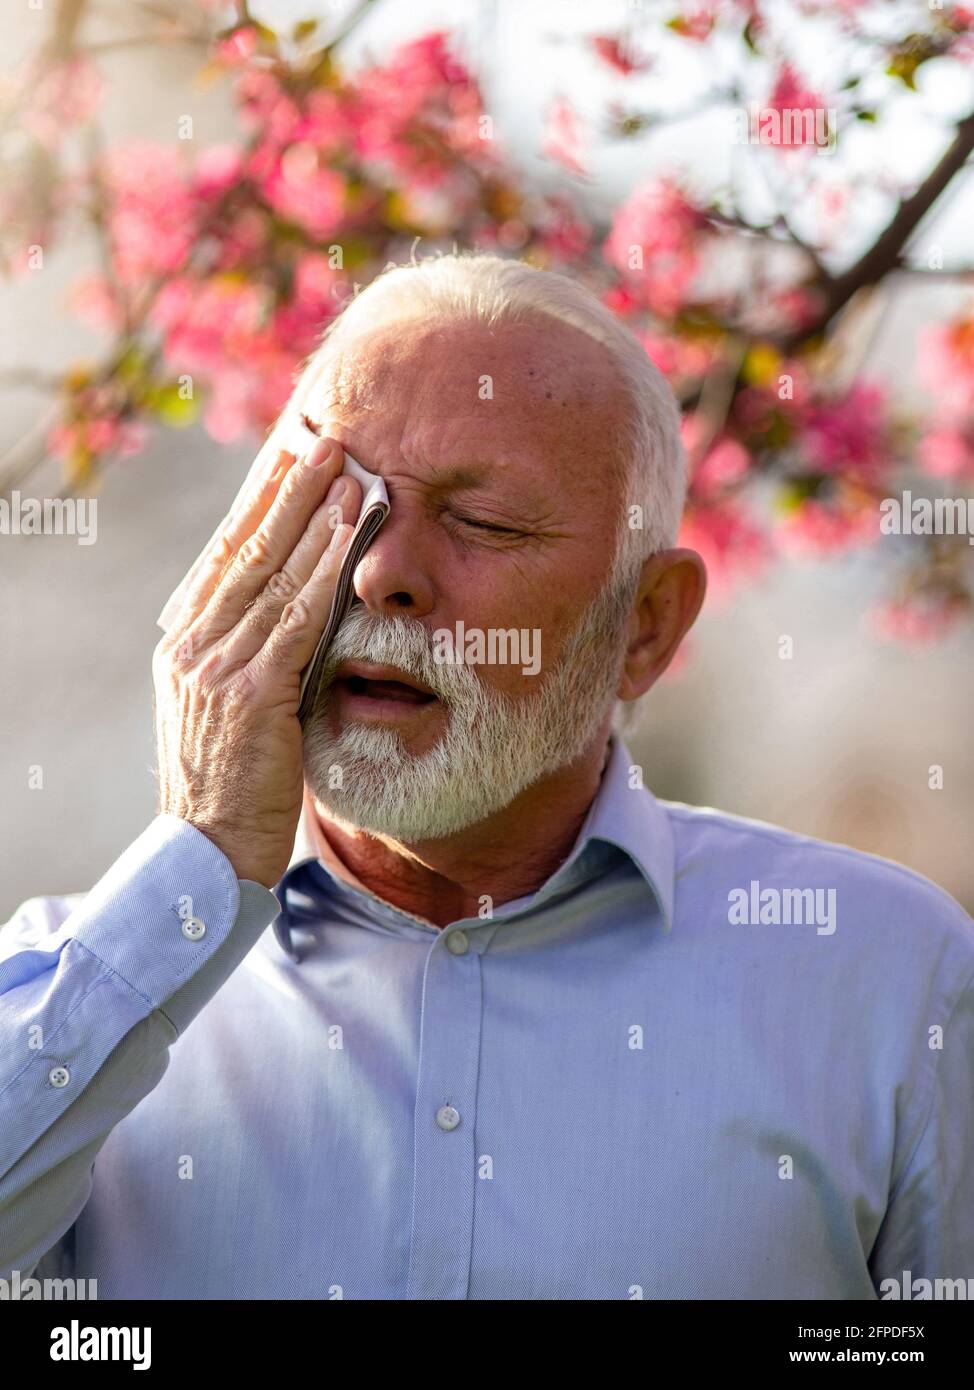 Älterer Mann mit Allergiesymptomen, der bei Schmerzen Gewebe am Kopf hält. Elrerly Person, die an Heuschnupfen leidet und die Augen reißt Stockfoto